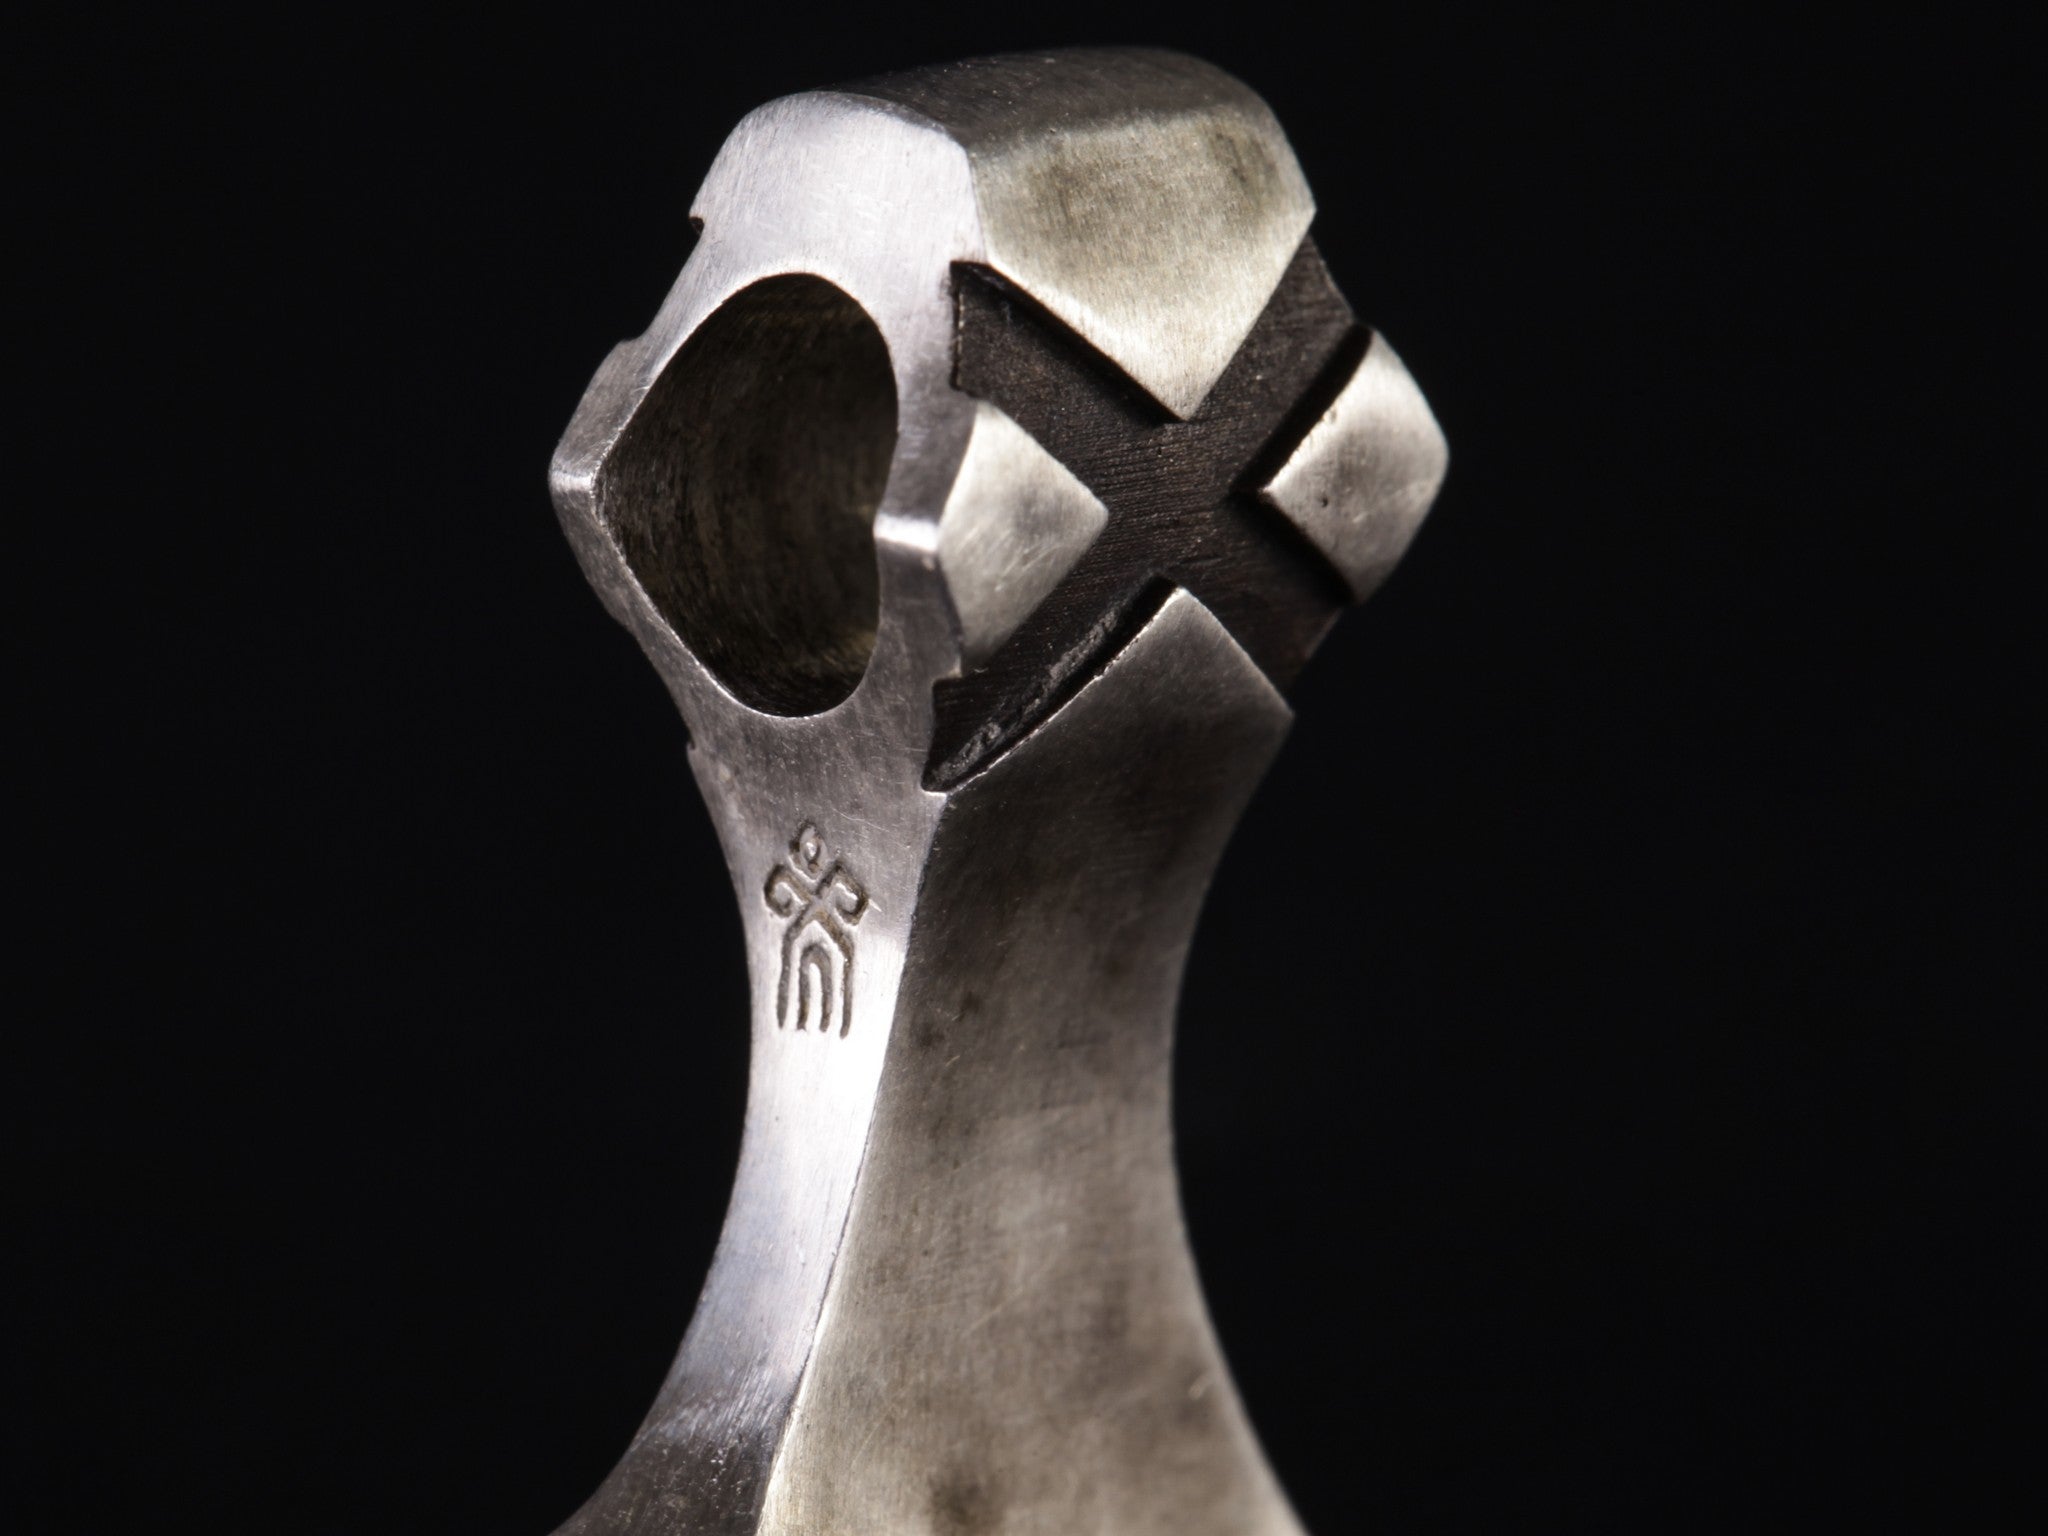 shop's logo on silver axe pendant